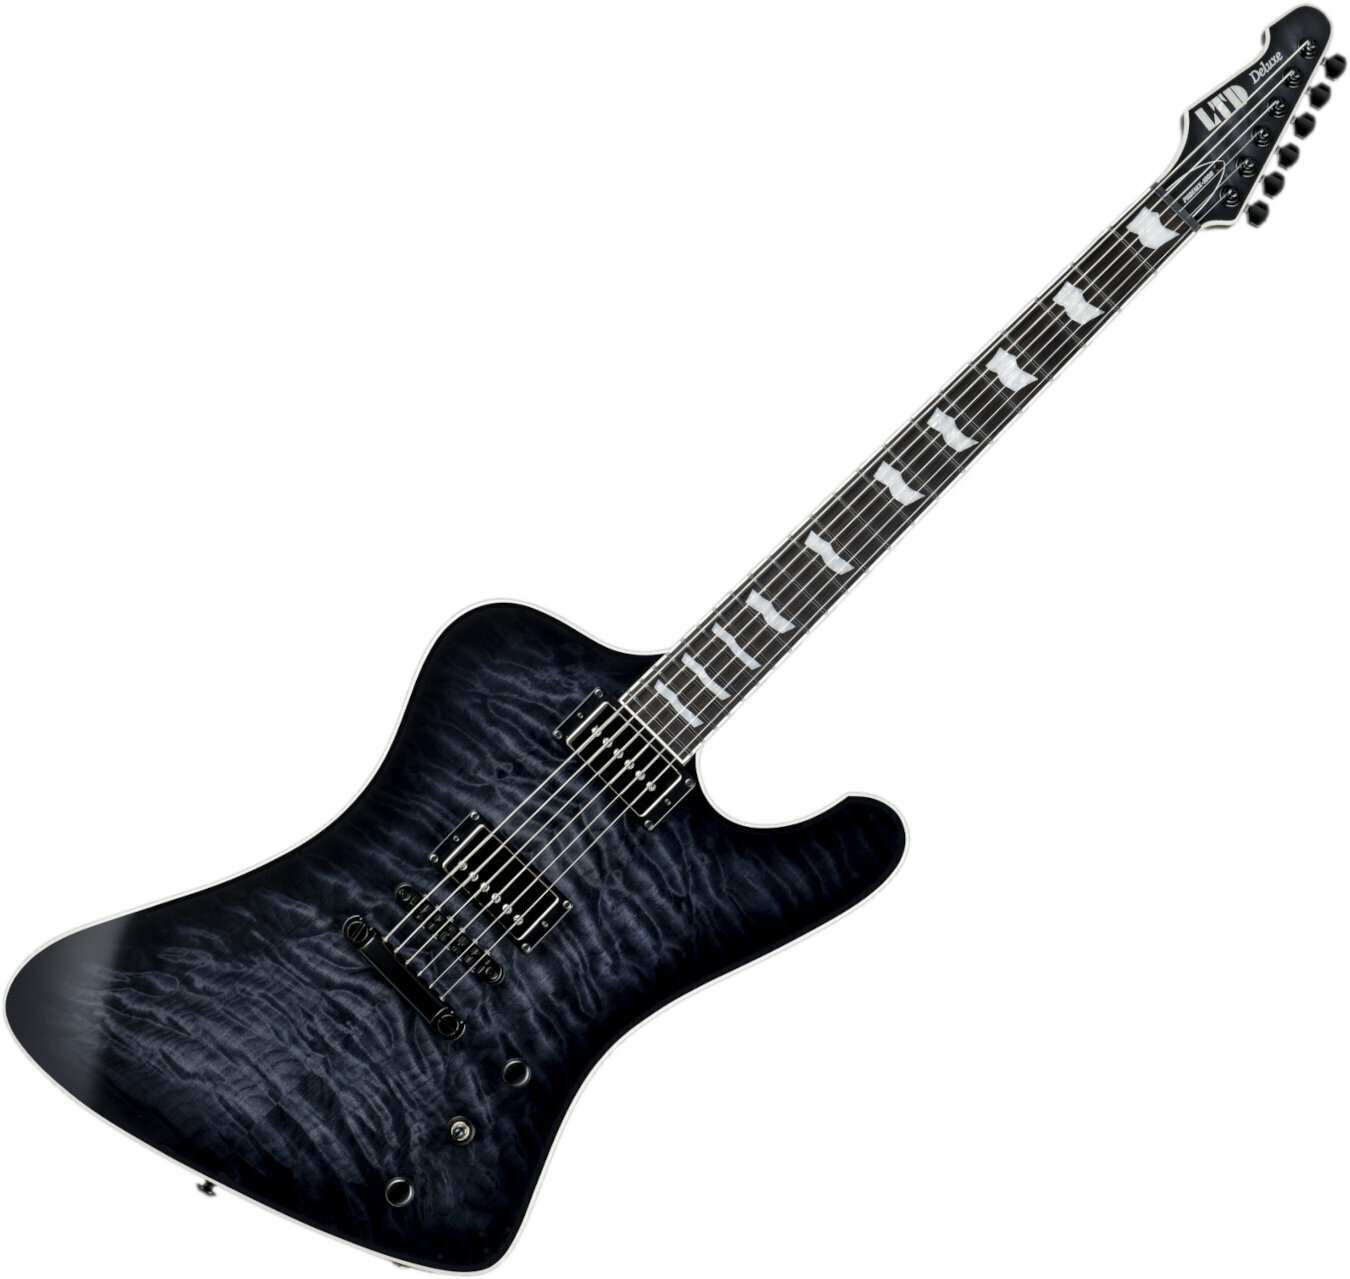 E-Gitarre ESP LTD Phoenix-1000 QM Black Sunburst (Beschädigt)